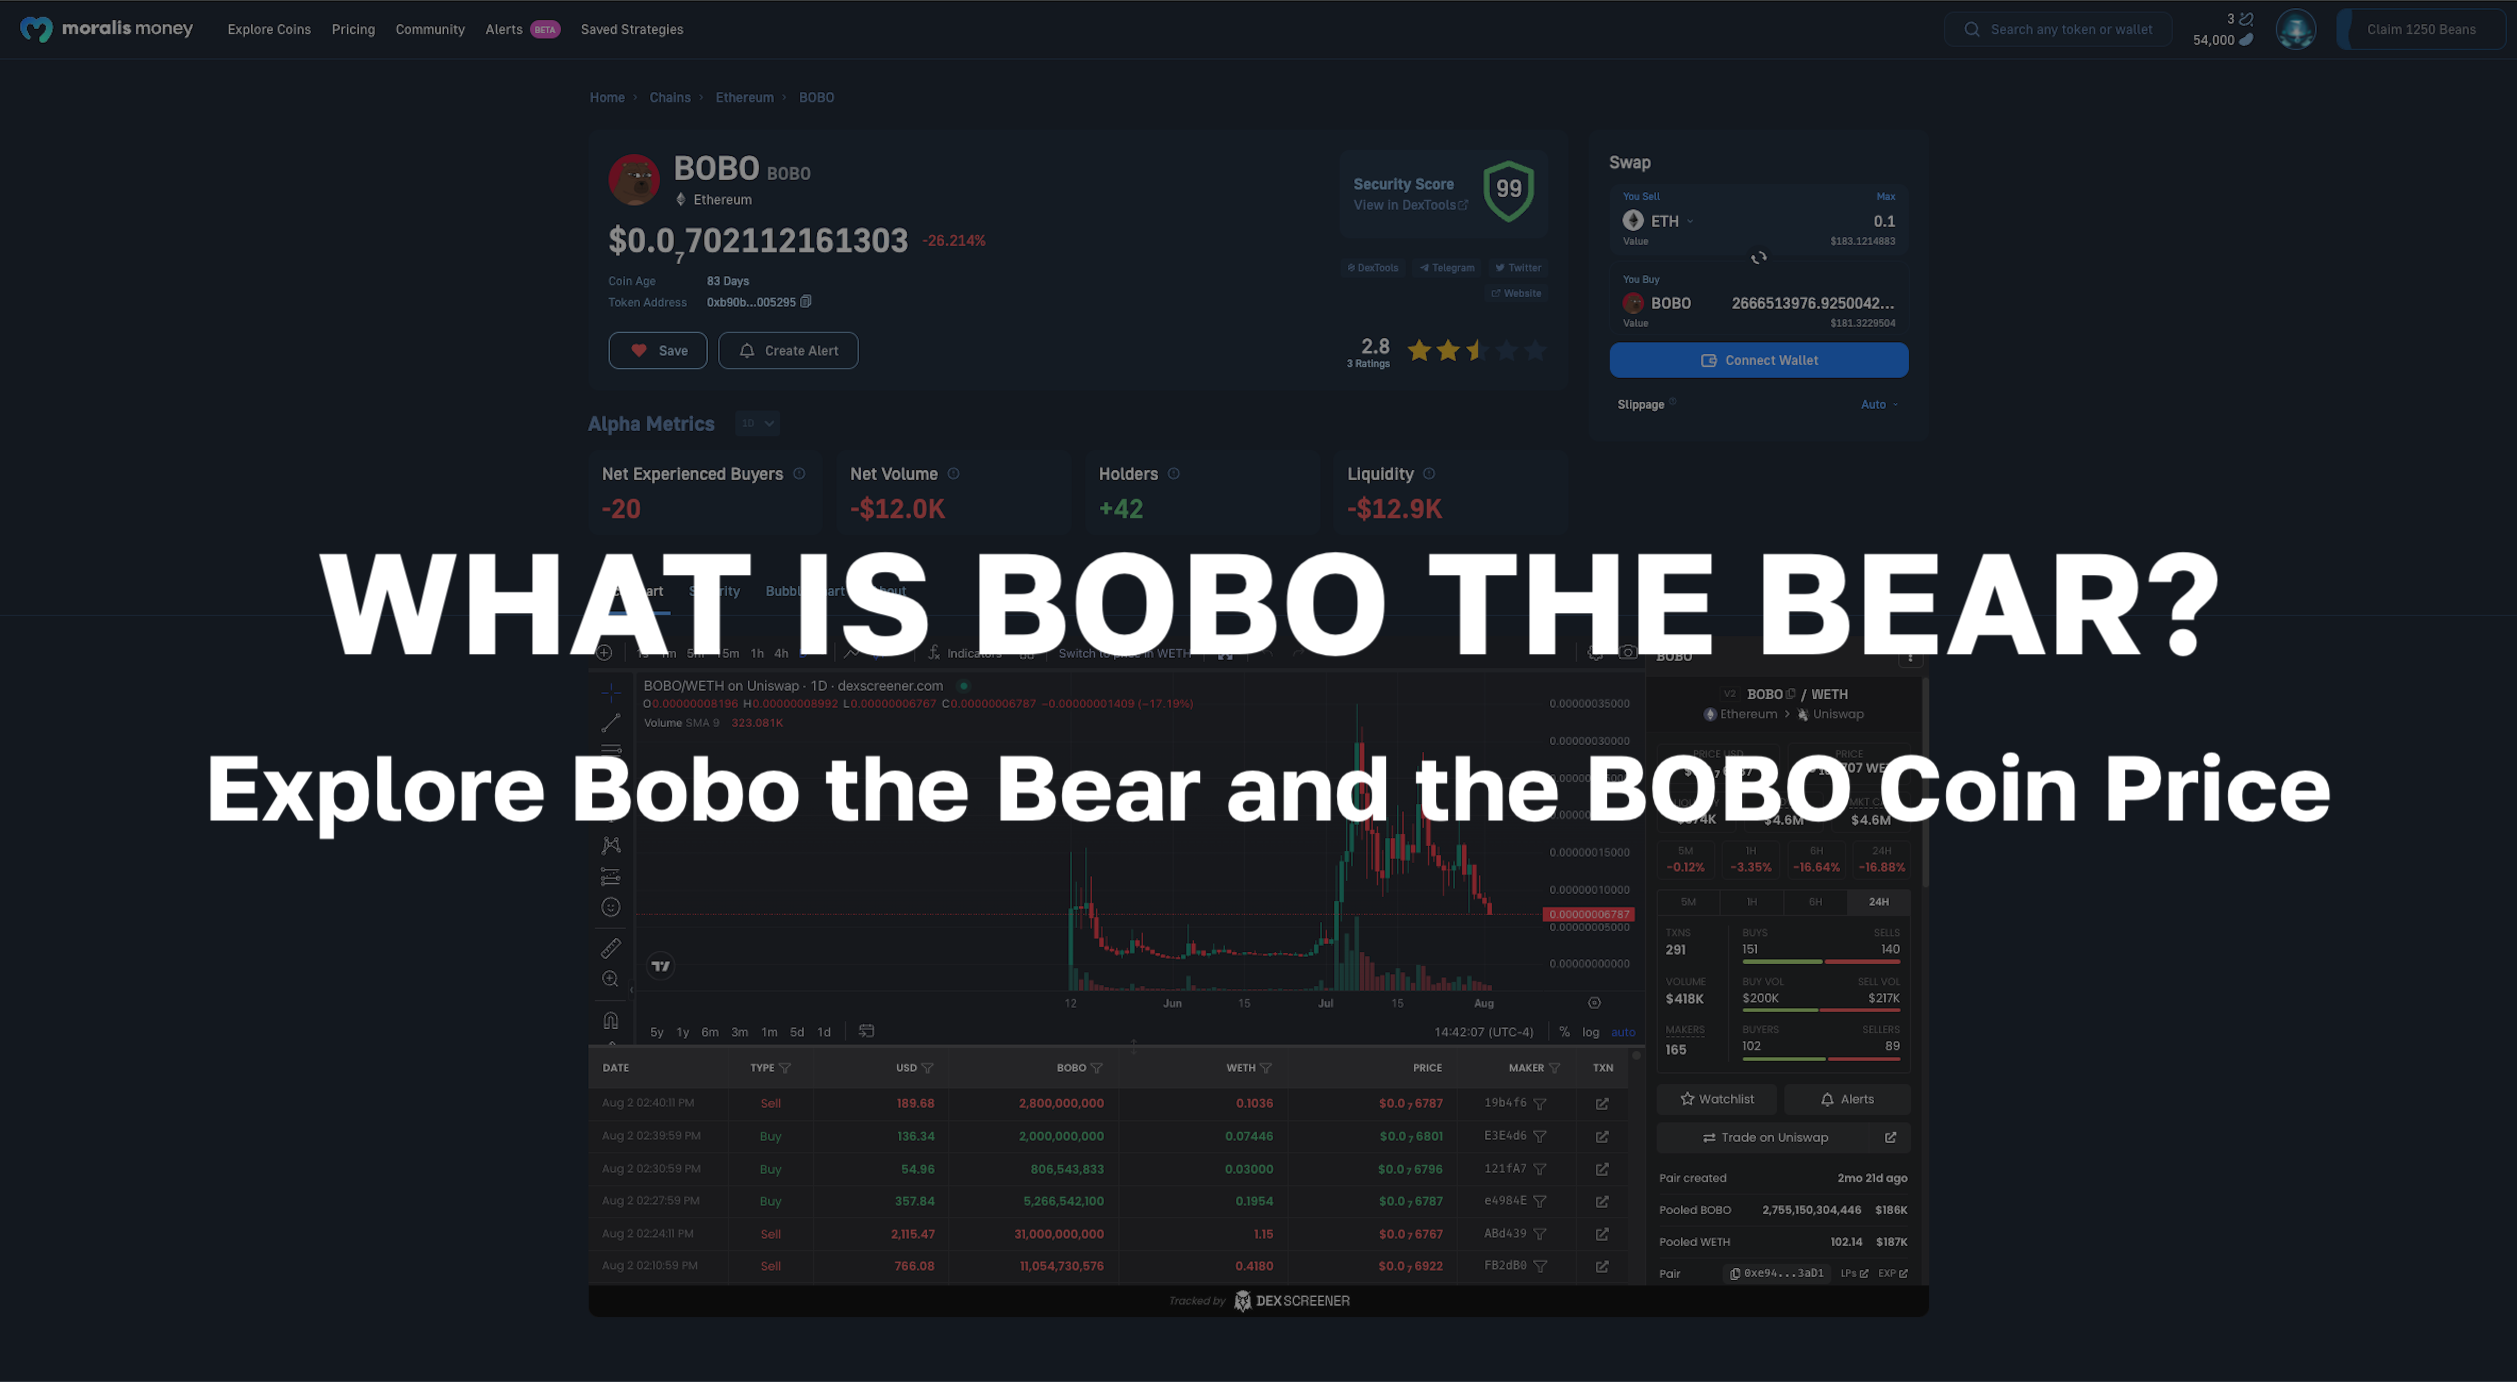 Explore Bobo the Bear and Analyze the BOBO Coin Price